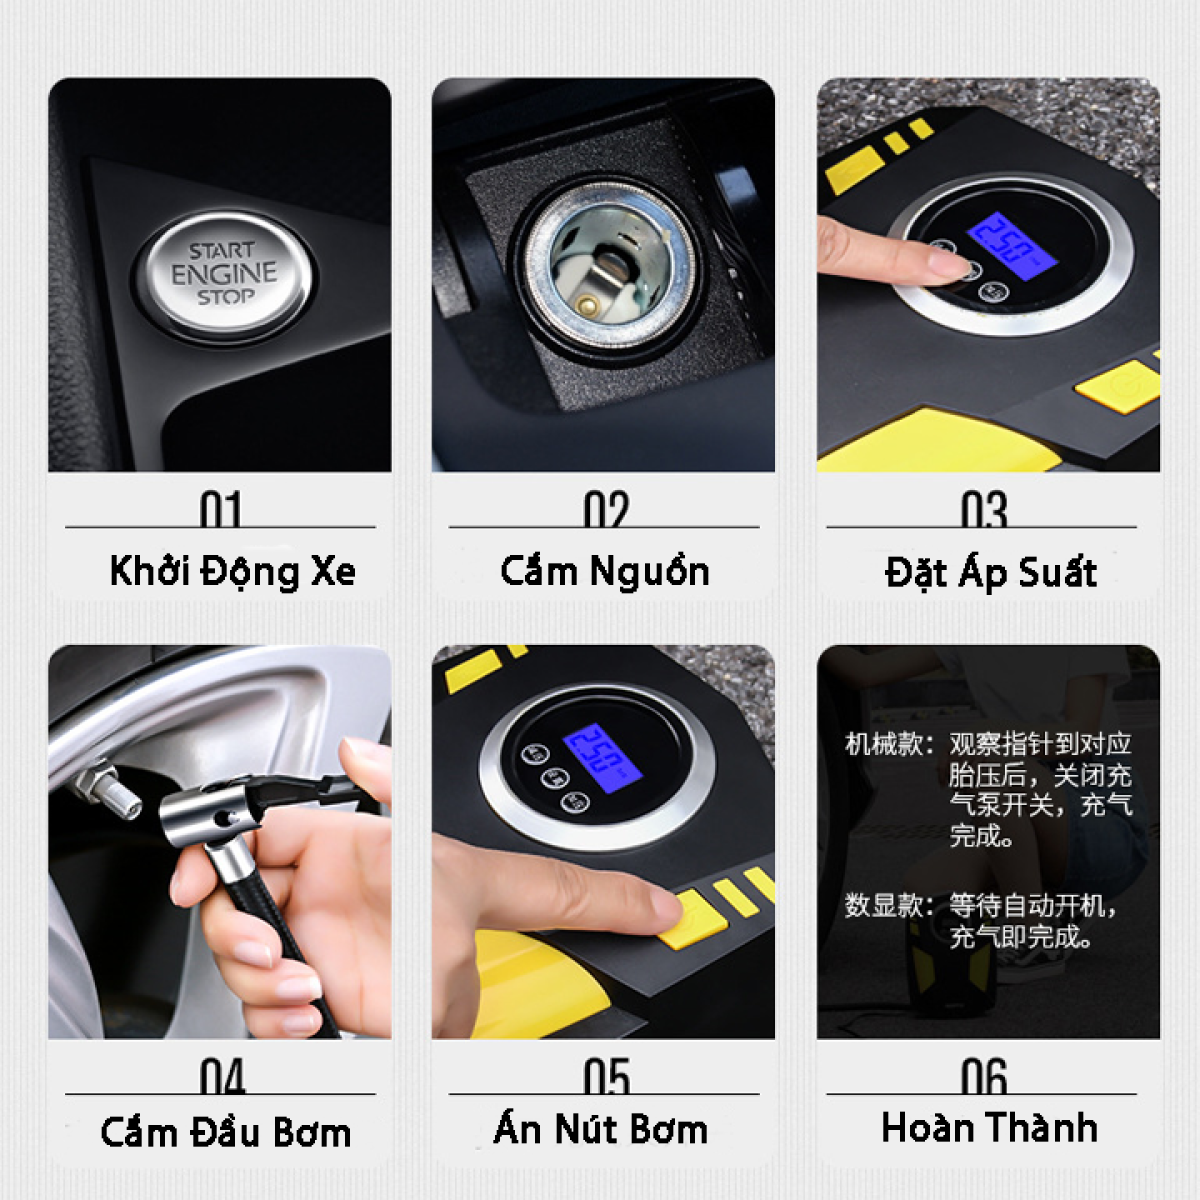 Máy bơm lốp xe ô tô Rundong Suitu ST – 5002 đồng hồ điện tử cao cấp | Máy bơm dùng nguồn 12V, tự động ngắt khi đủ áp suất, đo áp suất lốp, đèn Led chiếu sáng - HÀNG CHÍNH HÃNG